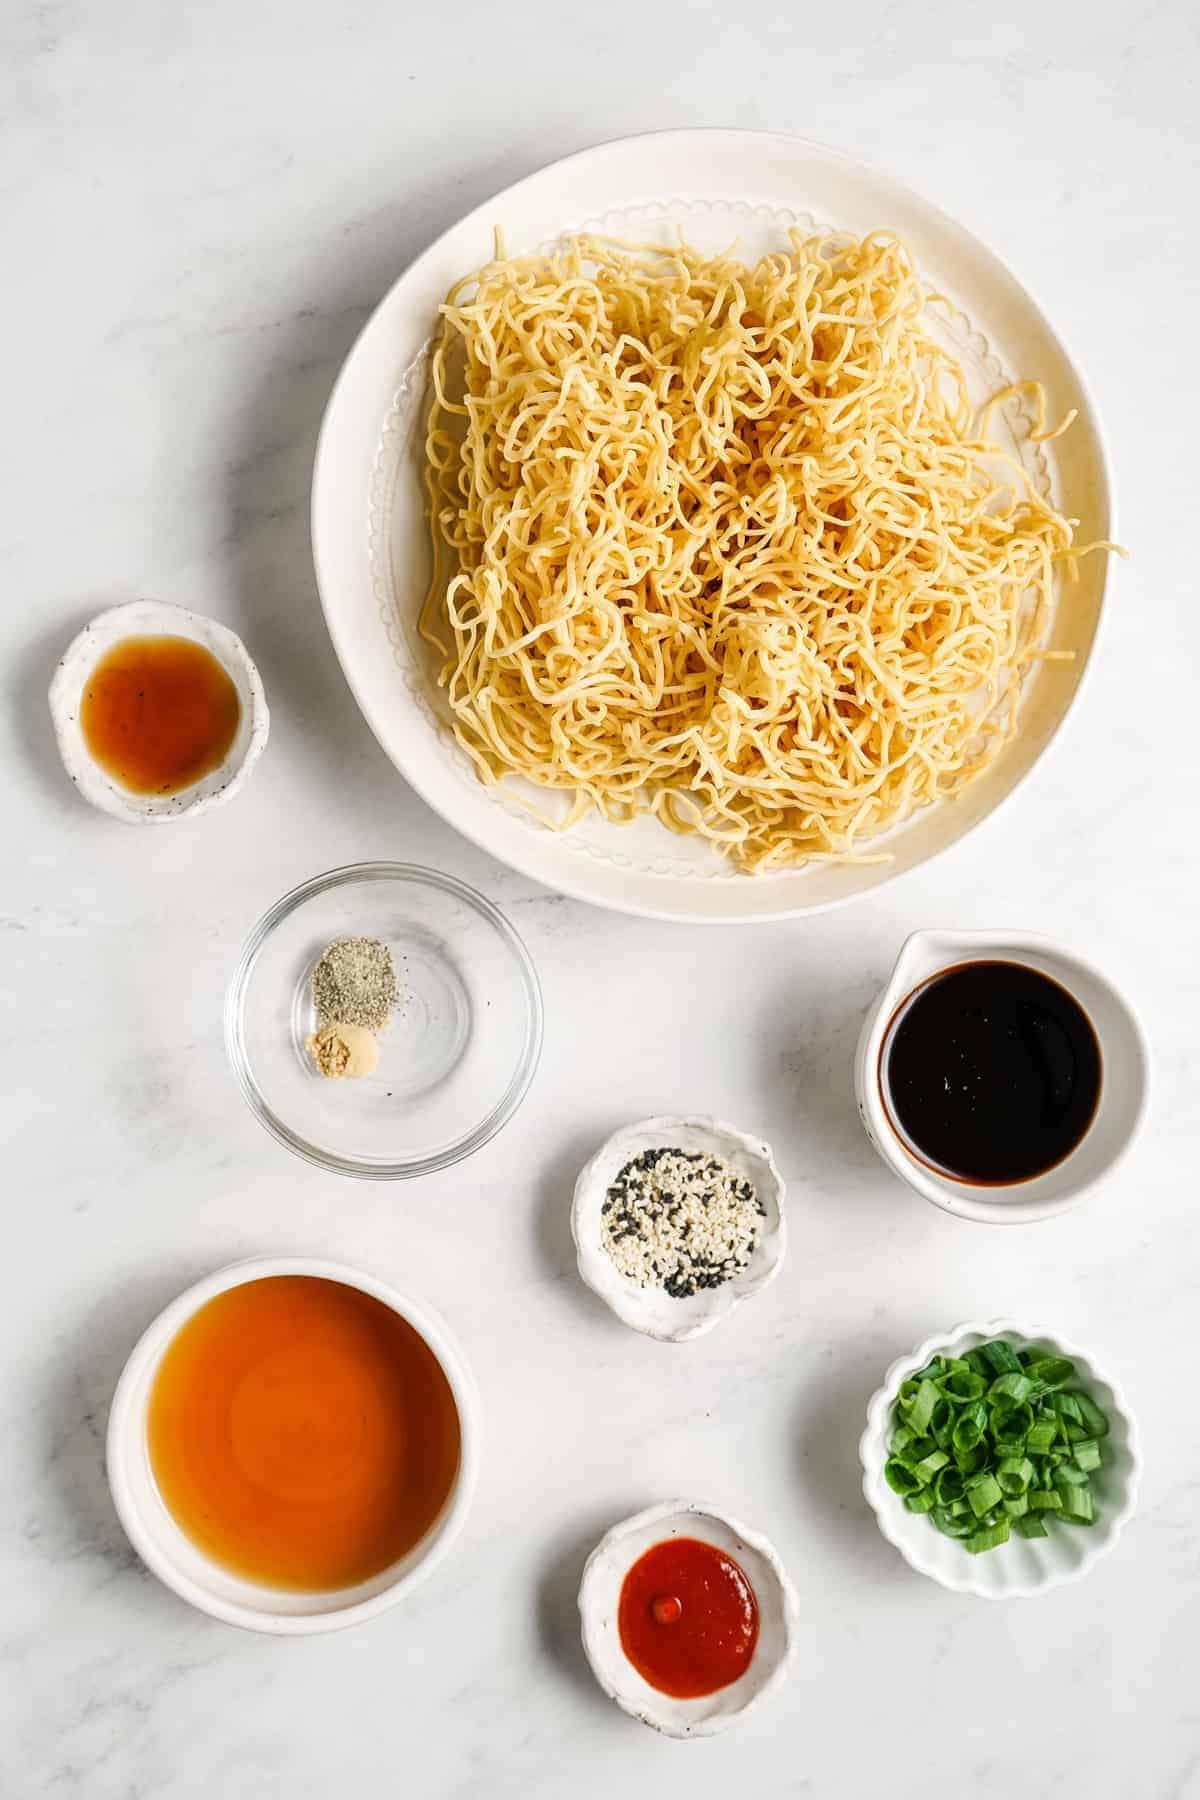 Ingredients for vegan sesame noodles.